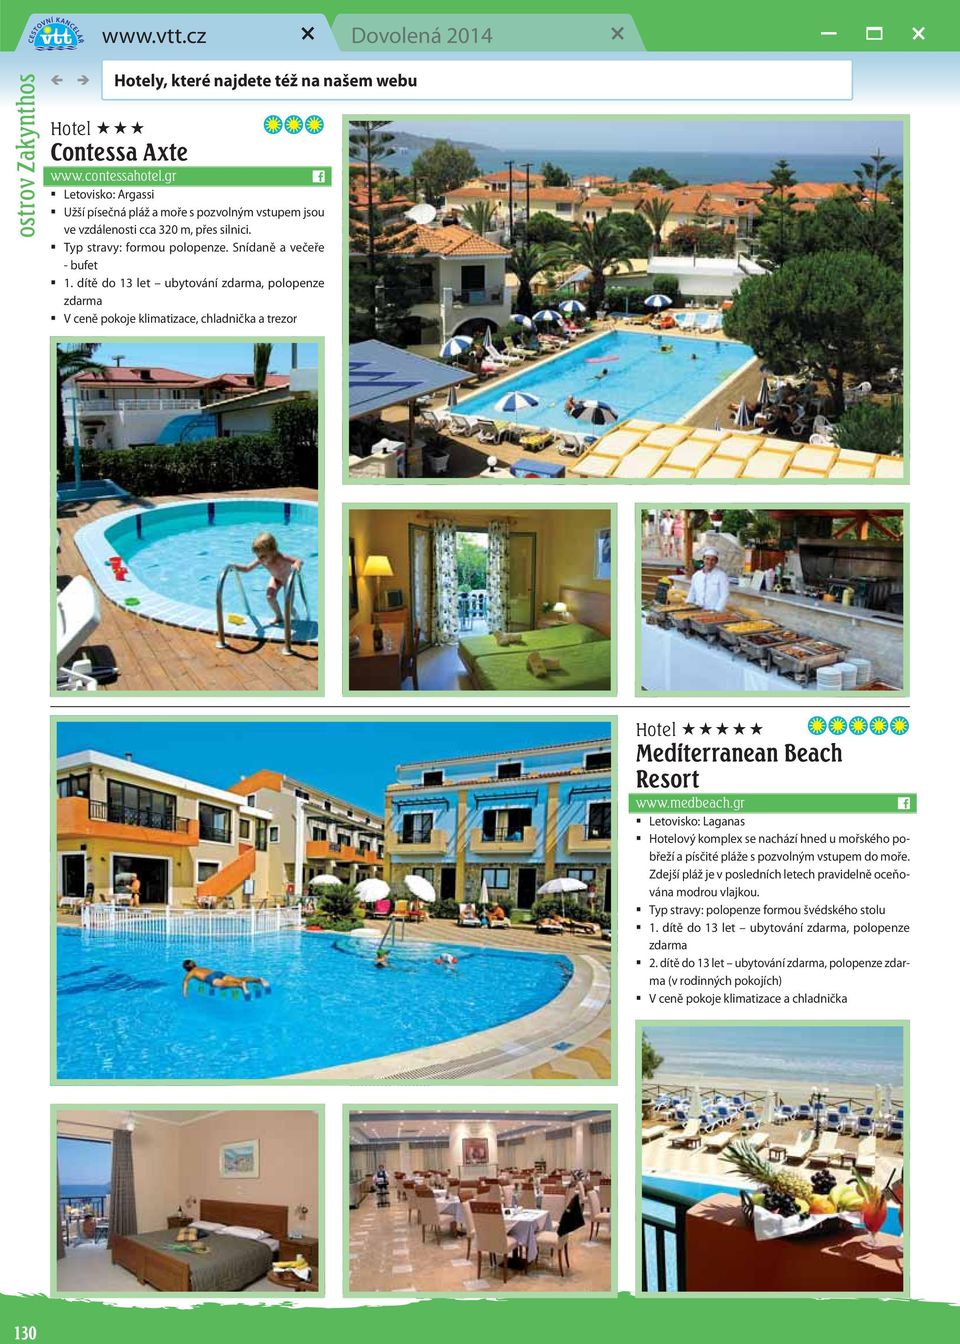 dítě do 13 let ubytování, oloenze V ceně okoje klimatizace, chladnička a trezor Hotel Mediterranean Beach Resort www.medbeach.